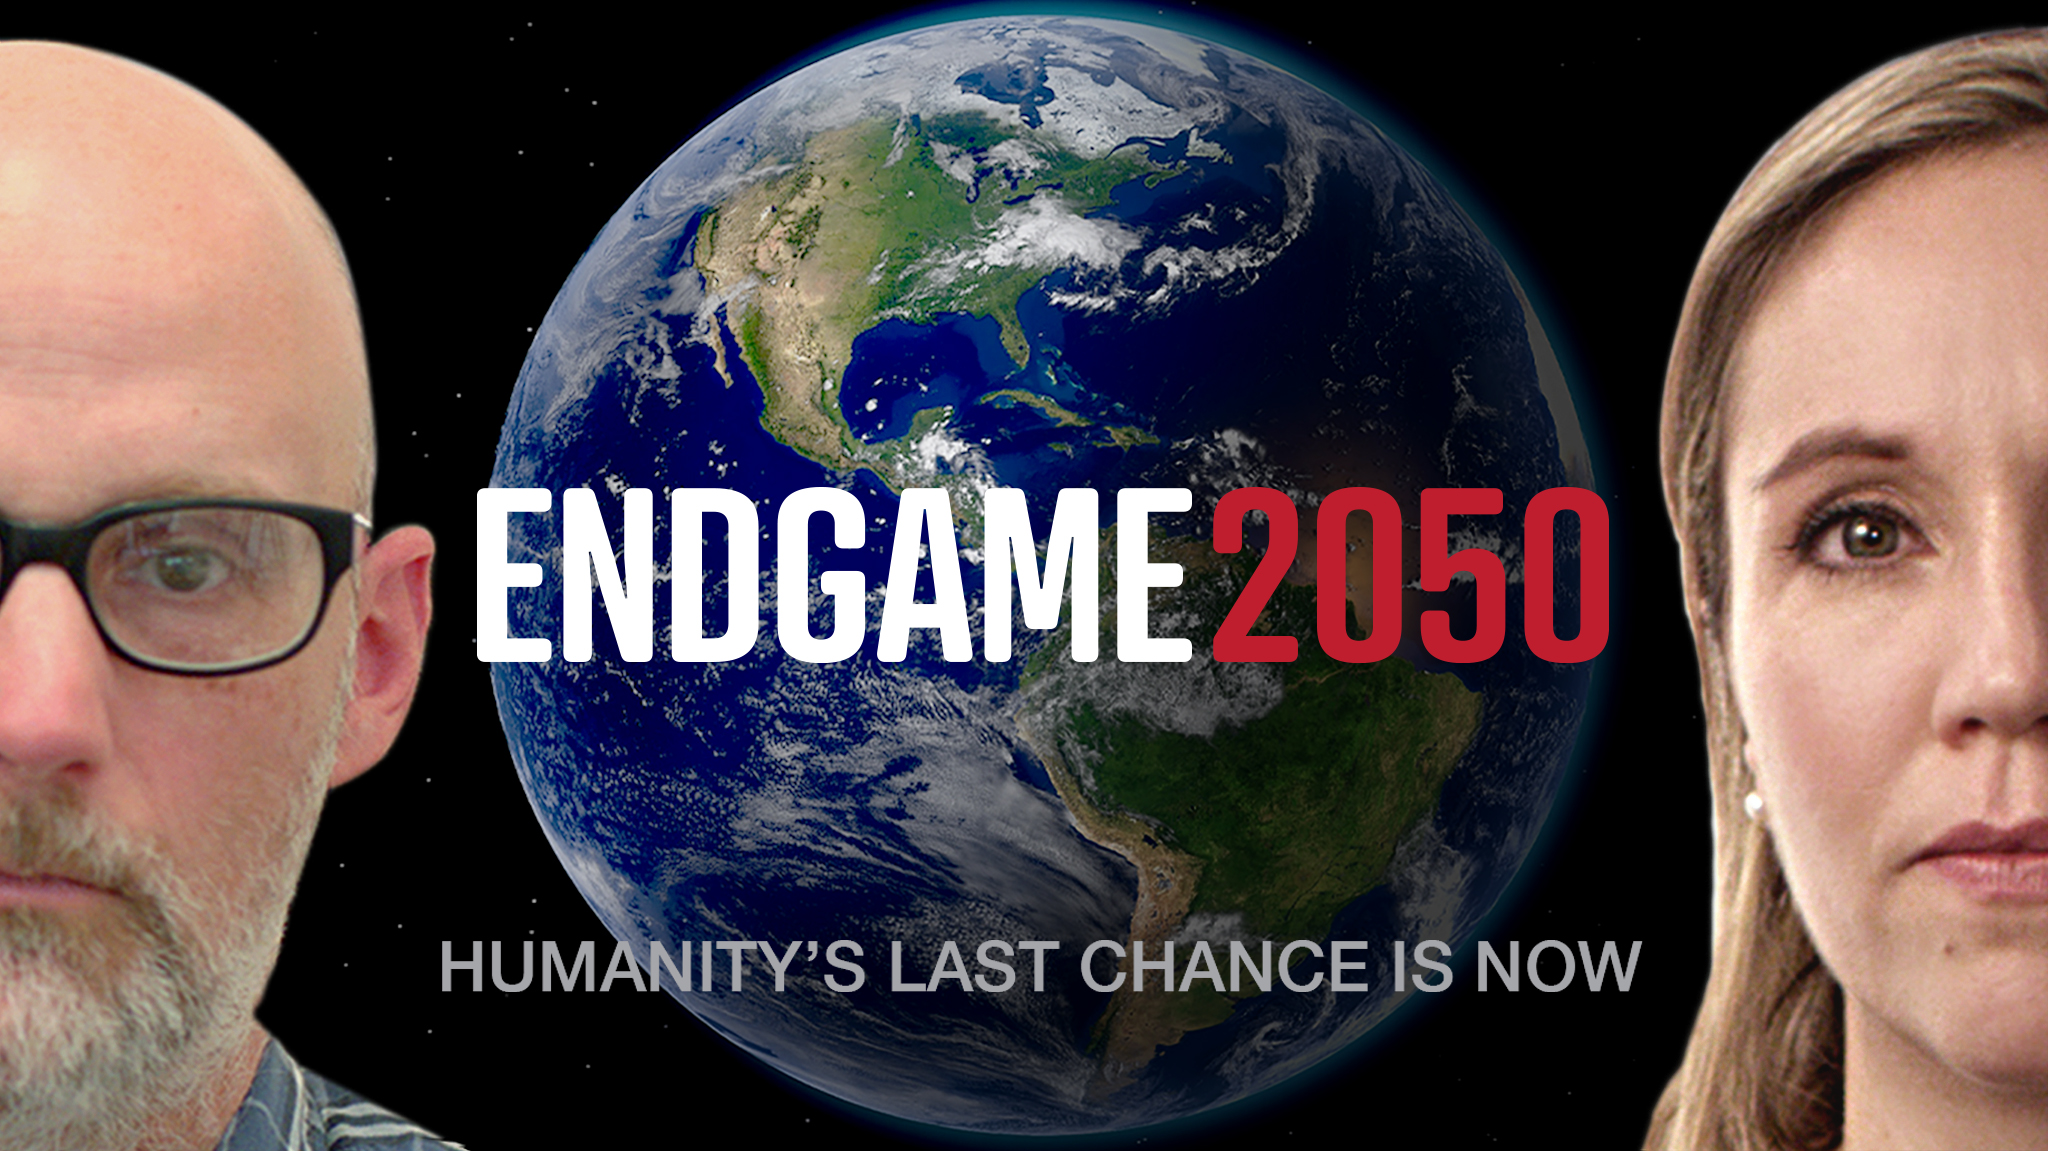 Endgame 2050 poster